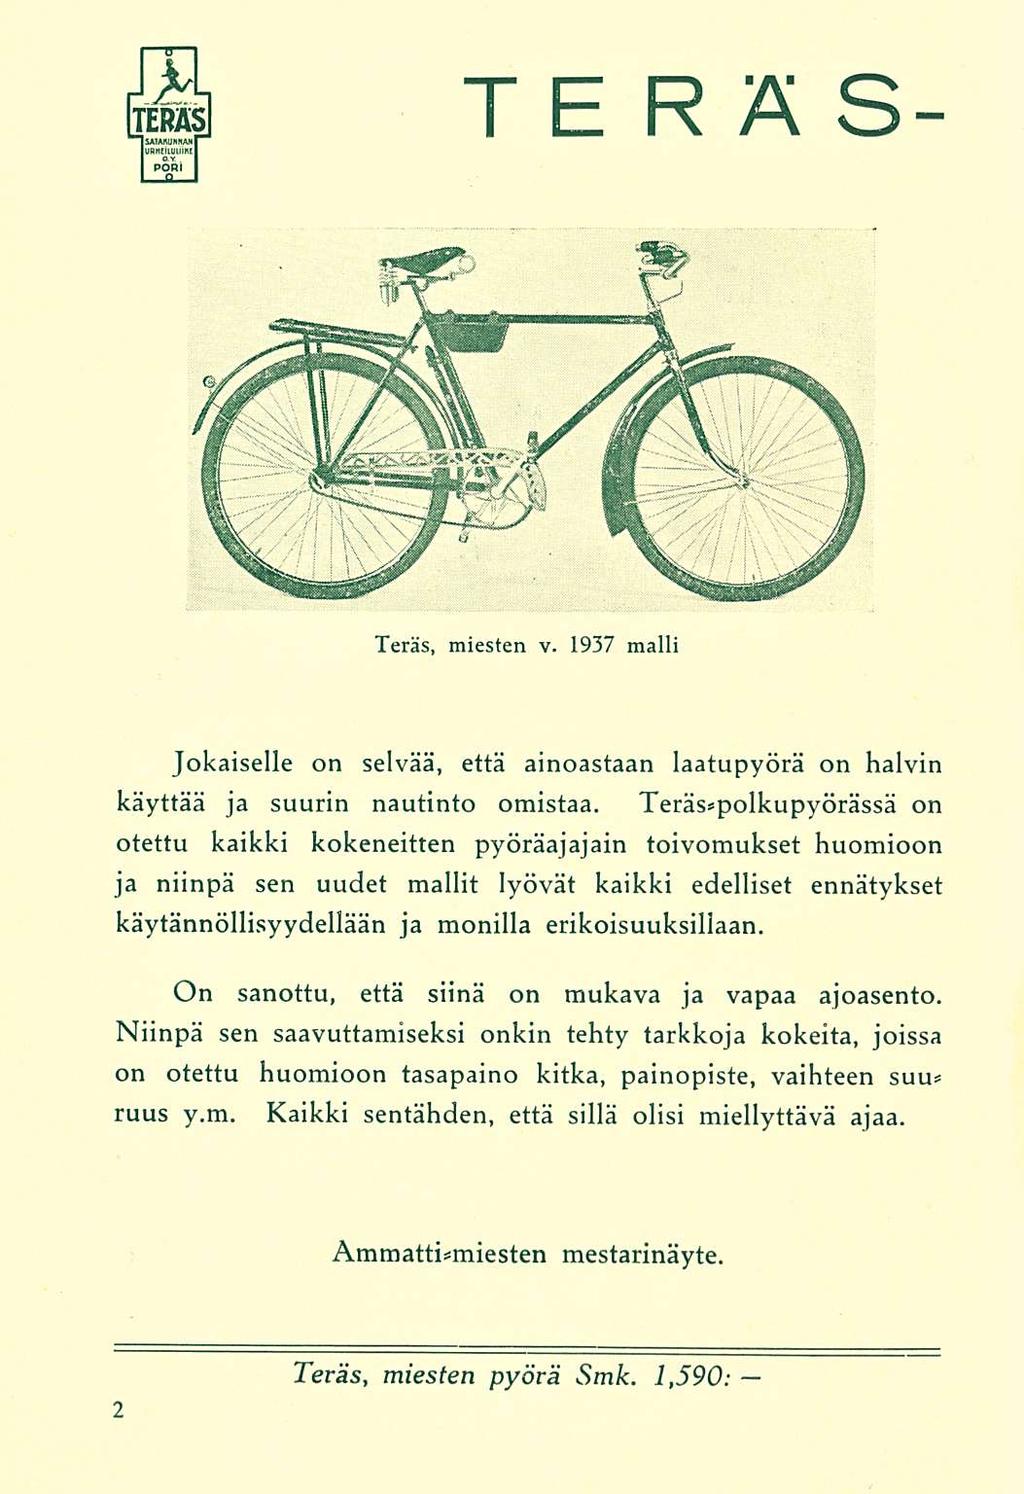 TERÄS Teräs, miesten v. 1937 malli Jokaiselle on selvää, että ainoastaan katupyörä on halvin käyttää ja suurin nautinto omistaa.